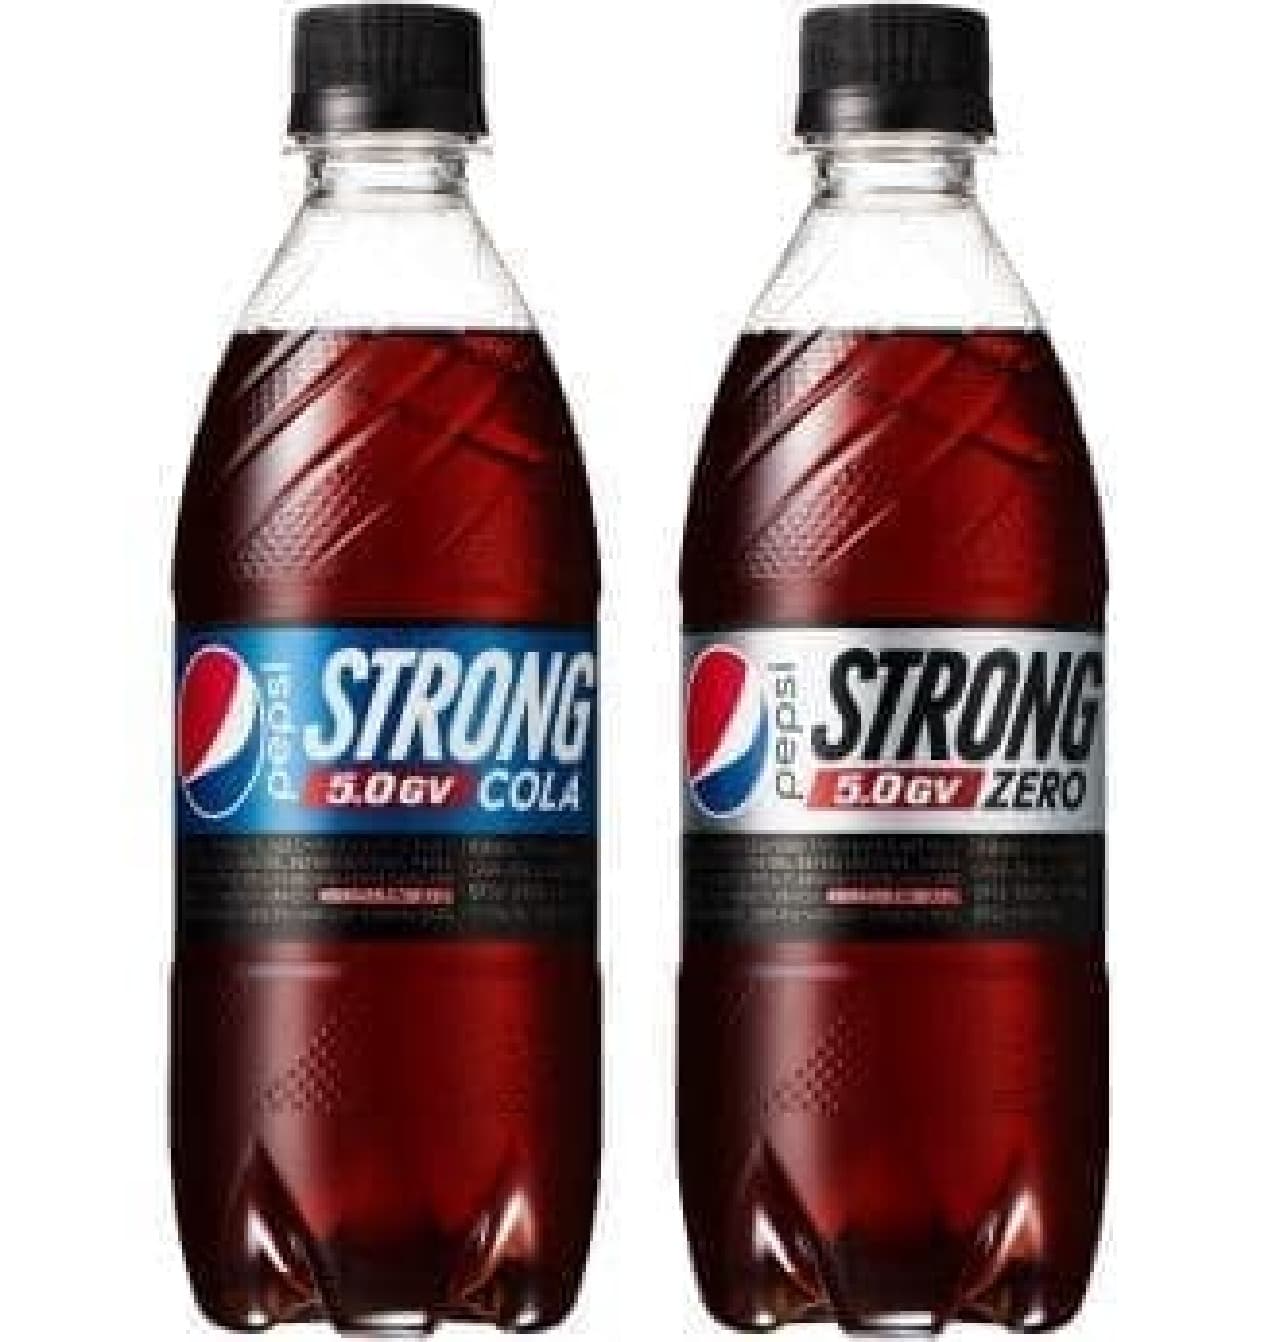 "Pepsi Strong 5.0GV" "Pepsi Strong 5.0GV [Zero]"